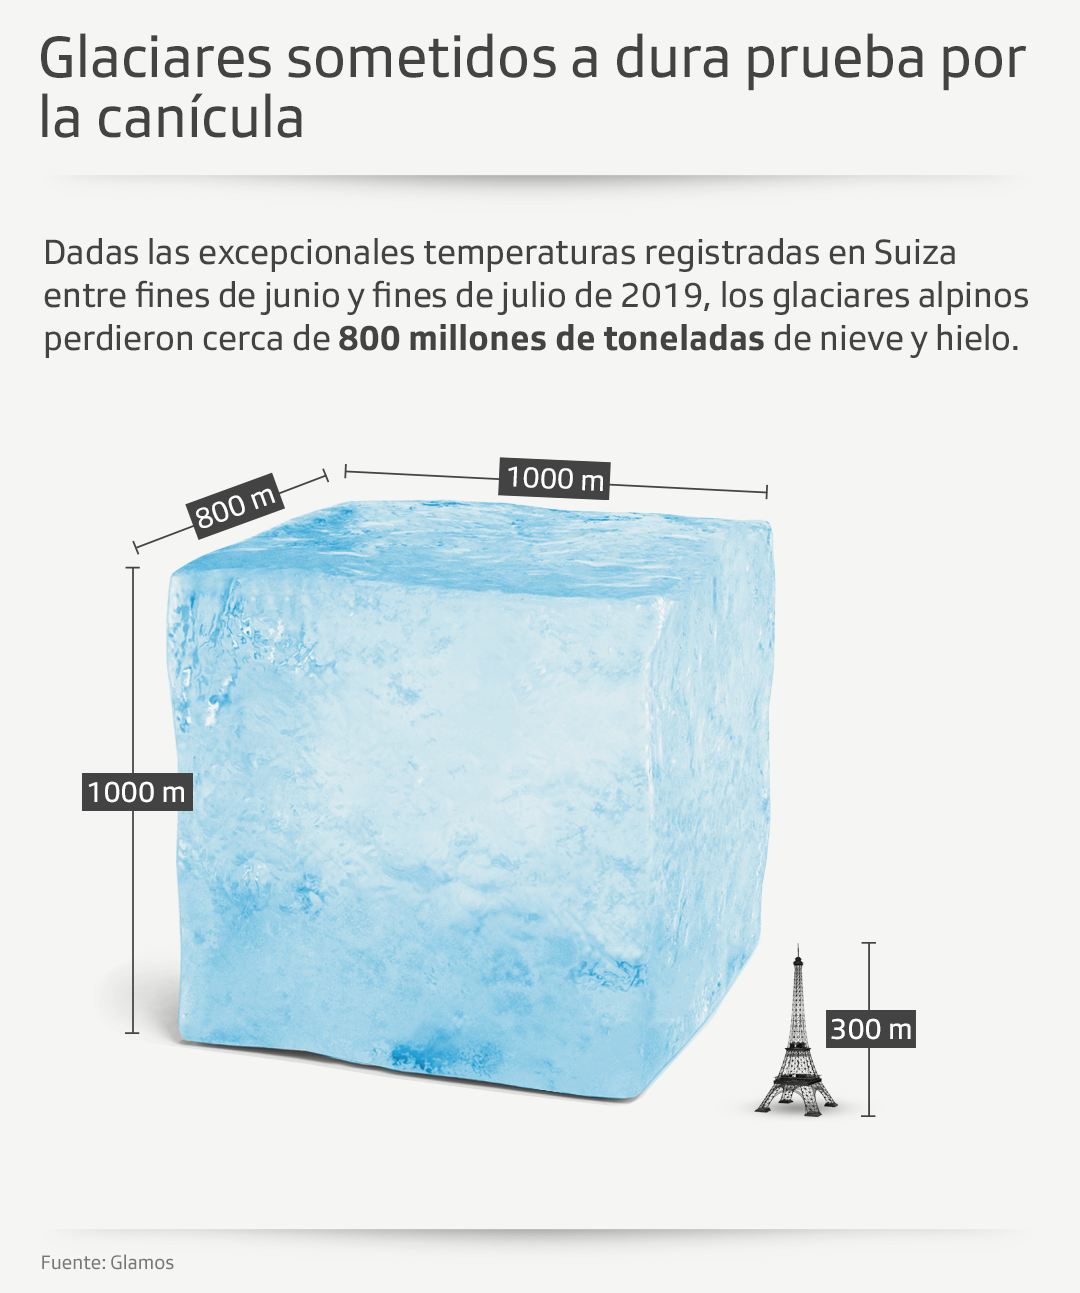 Gráfico sobre fundición de glaciares